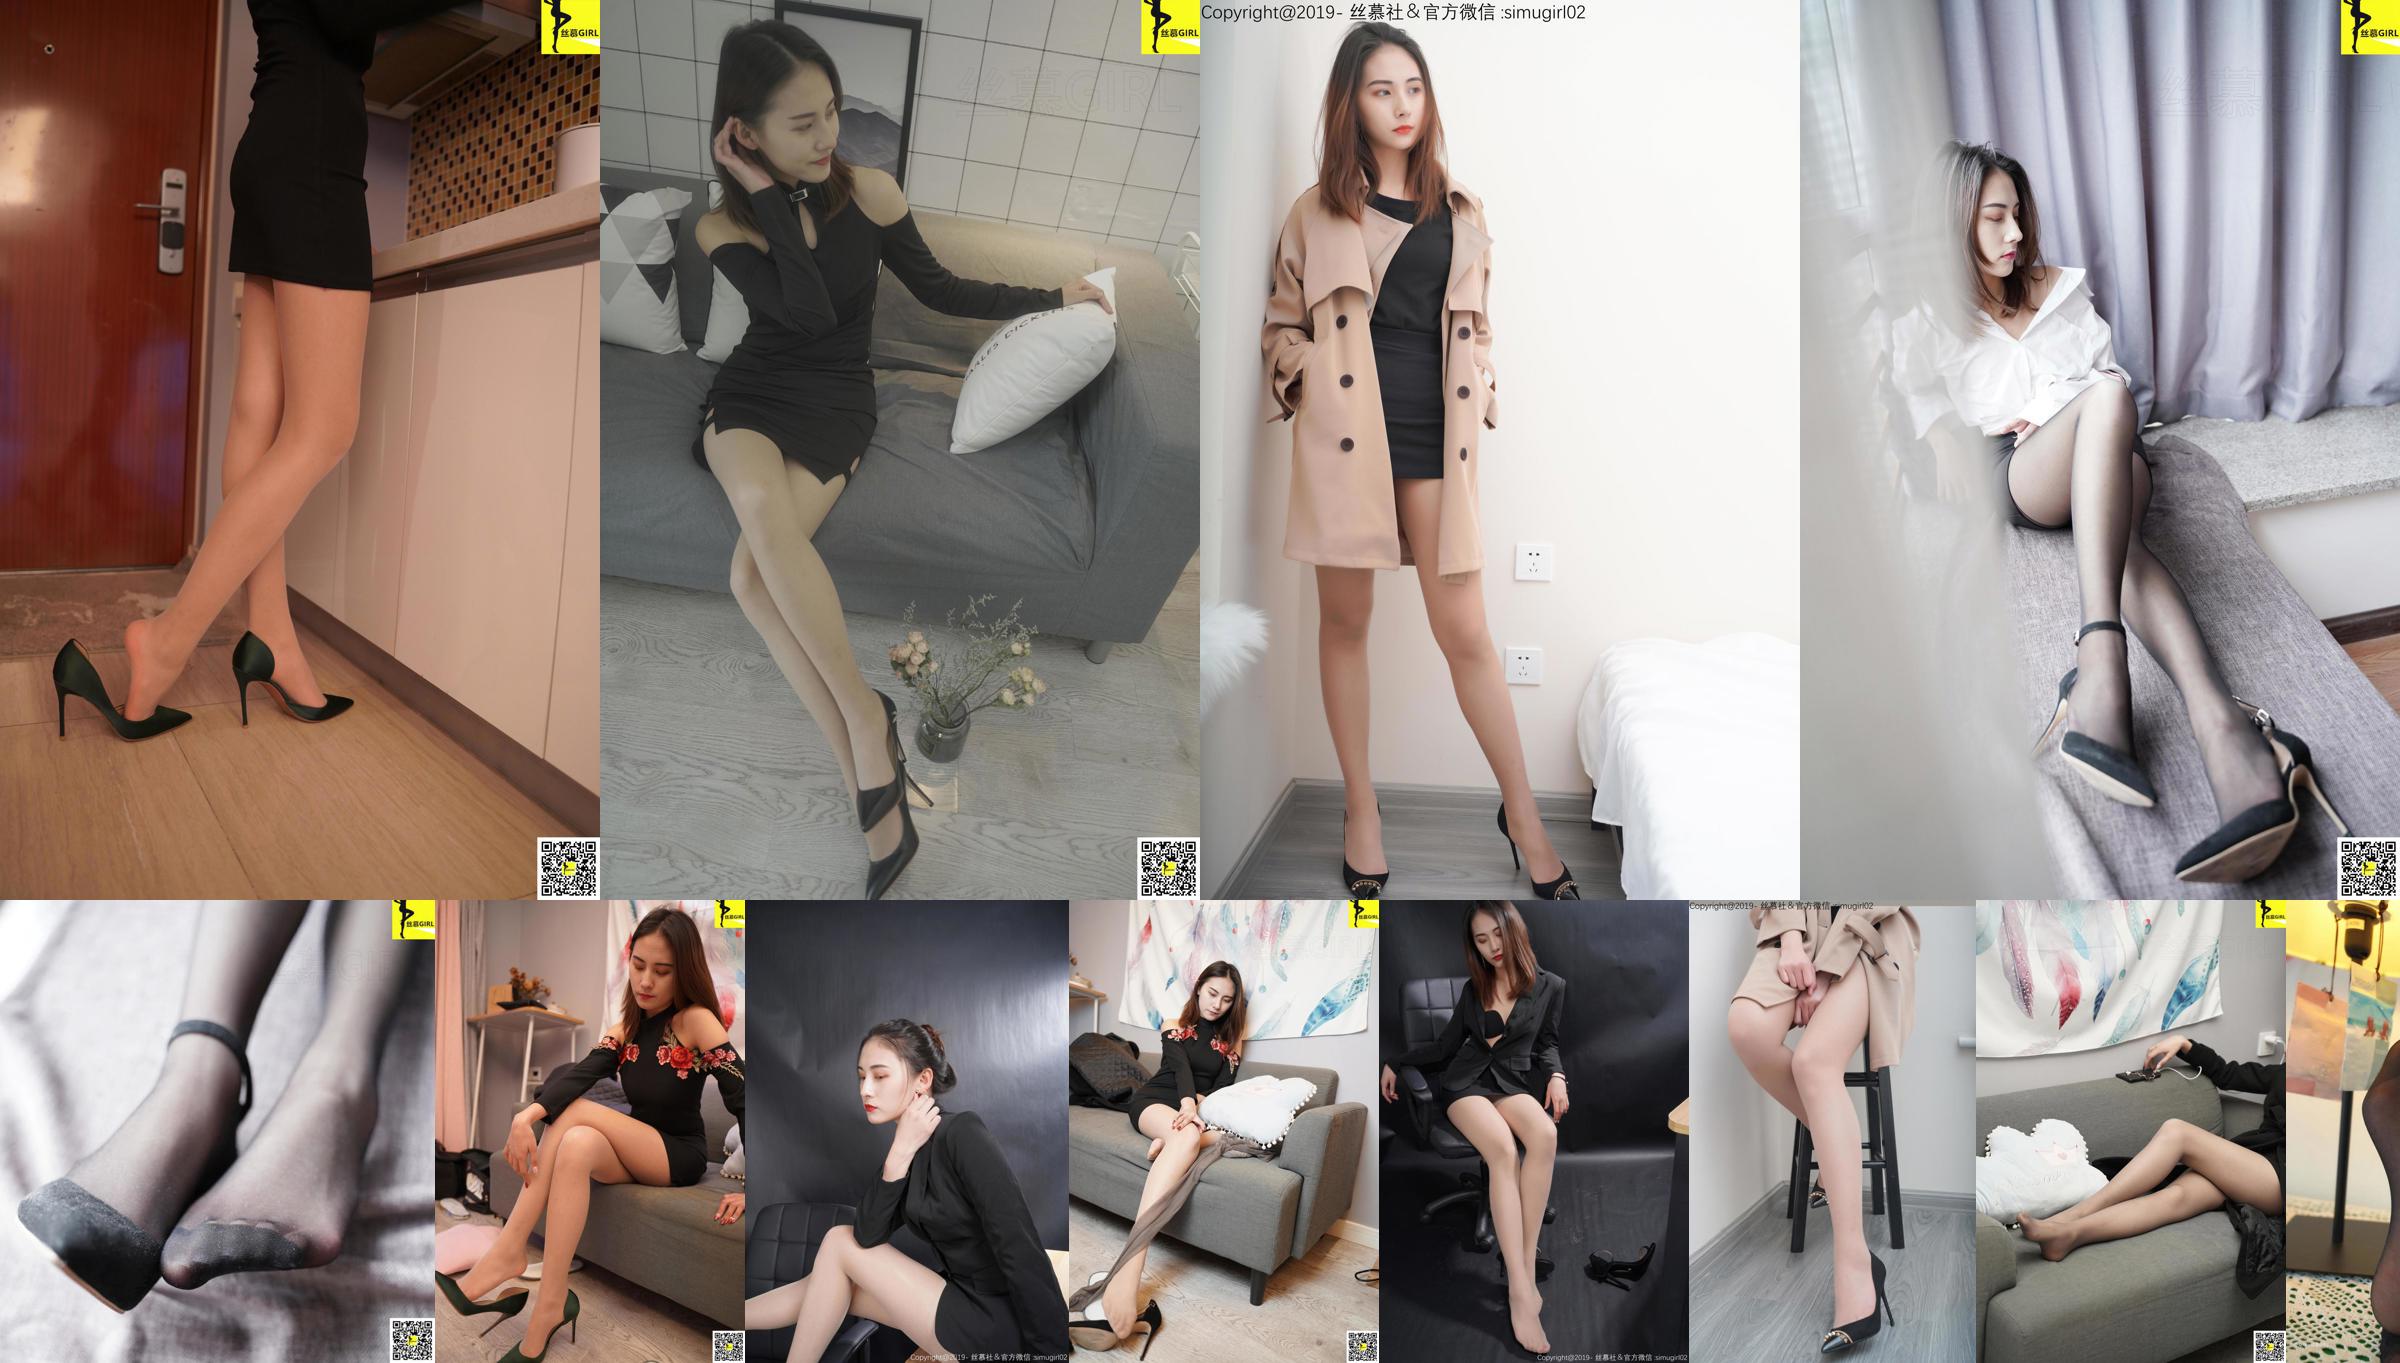 [Simu] SM006 Tingyi "Capo femminile con bellissimi piedi" No.30eda4 Pagina 5